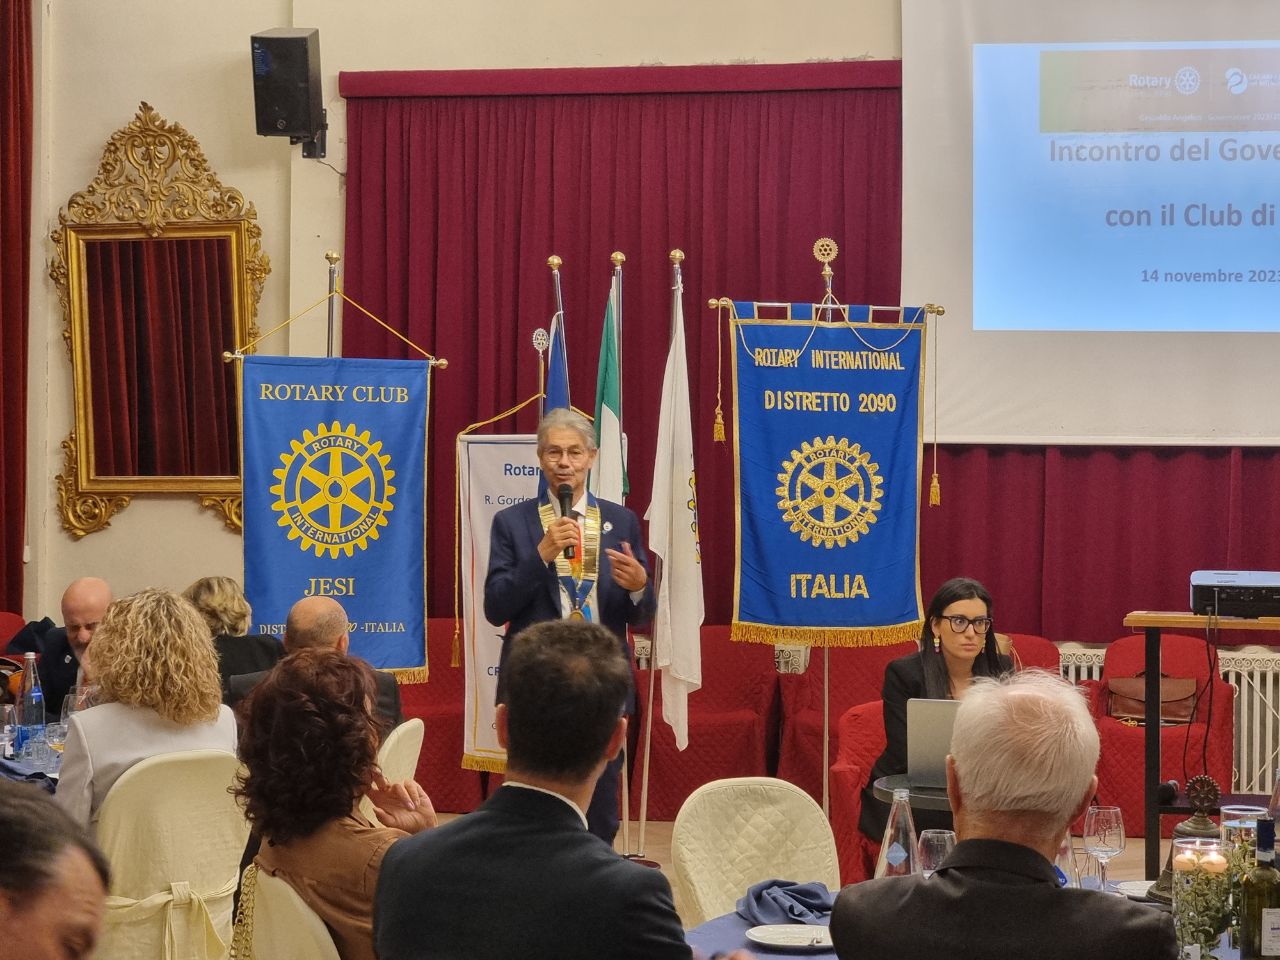 Il Governatore Gesualdo Angelico ospite del Rotary Jesi: “abbiamo il dovere di creare speranza”